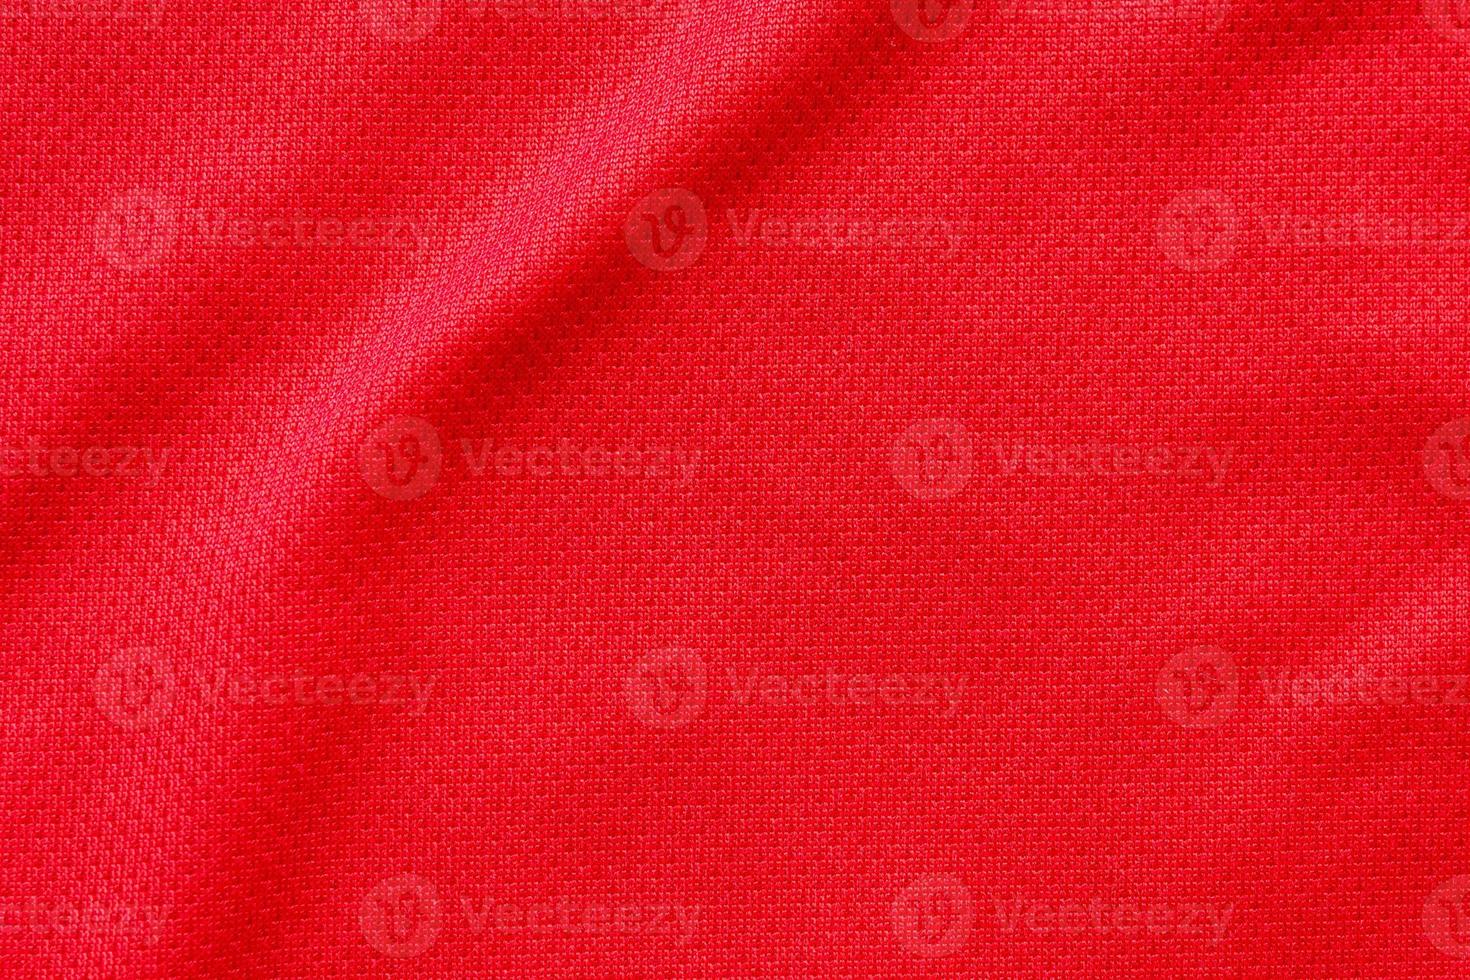 rosso gli sport capi di abbigliamento tessuto calcio camicia maglia struttura sfondo foto